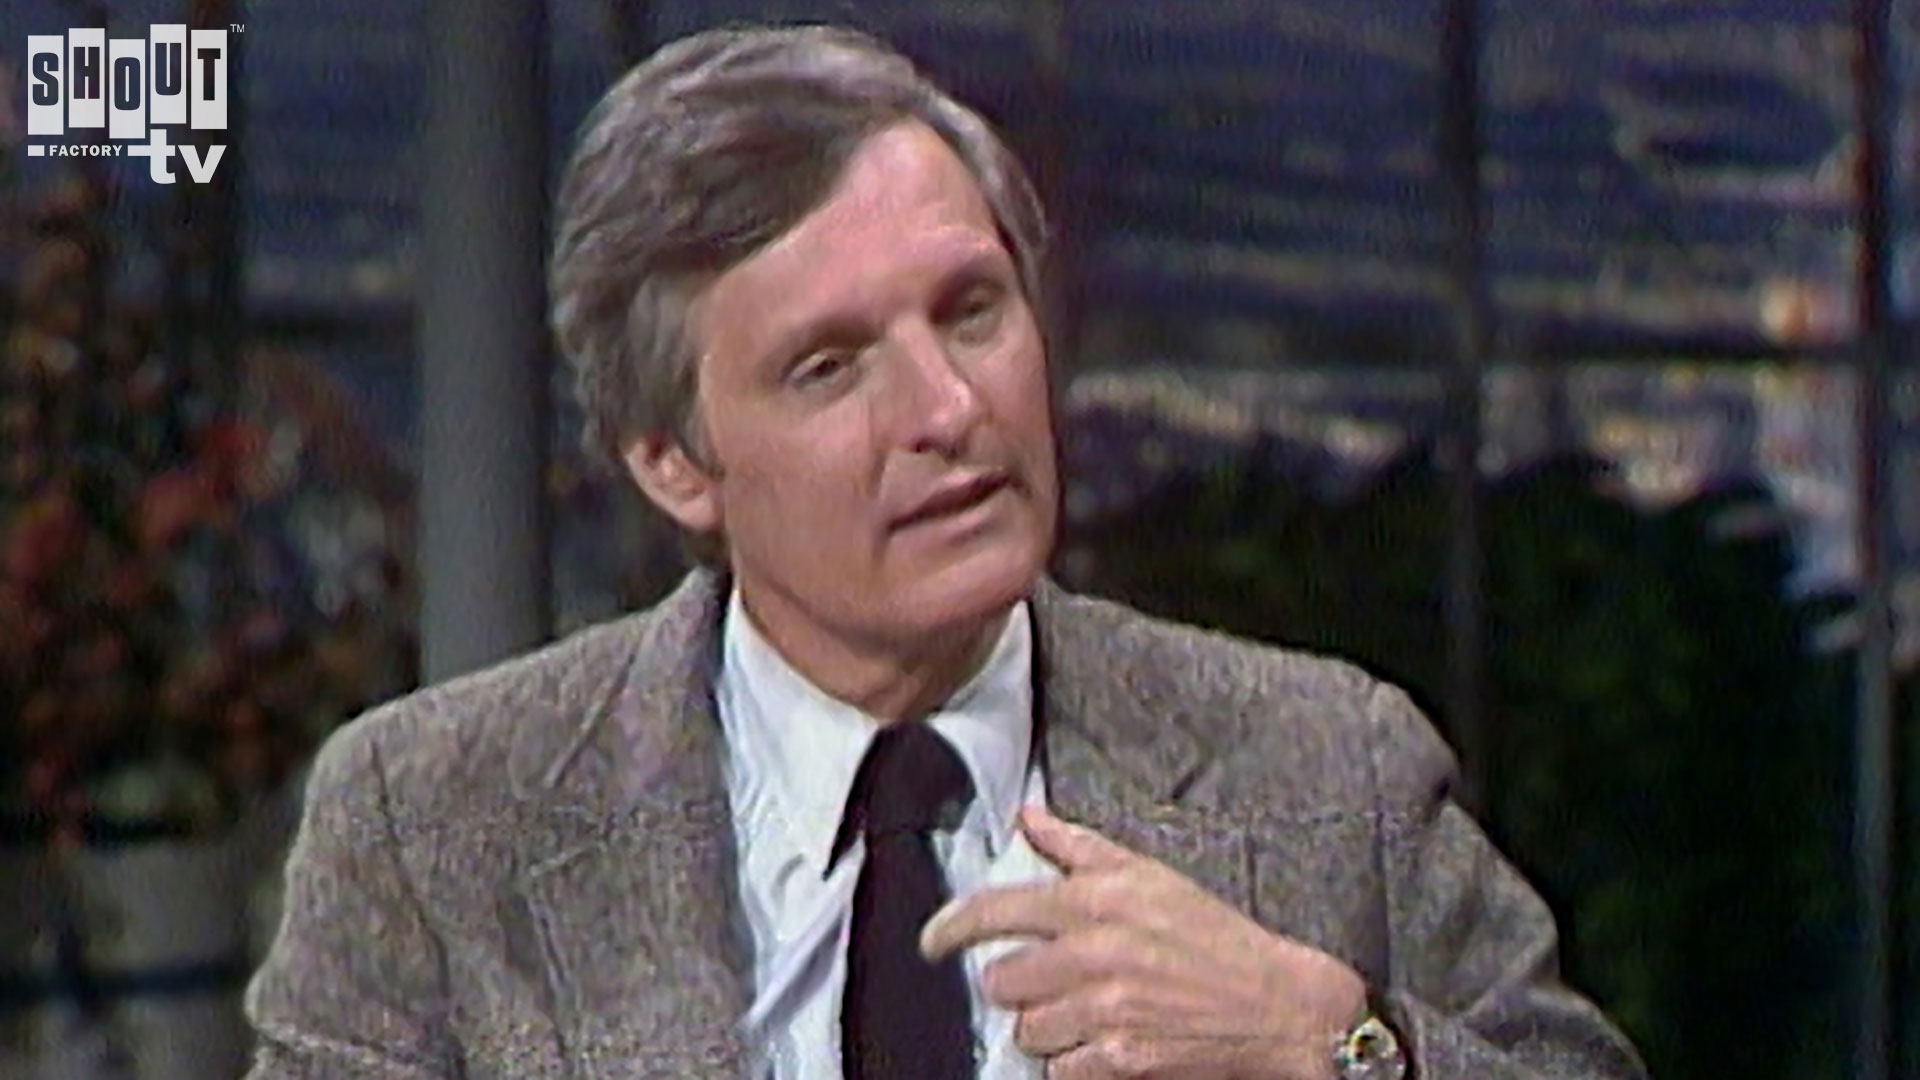 Alan Alda on Letterman, May 19, 1986 